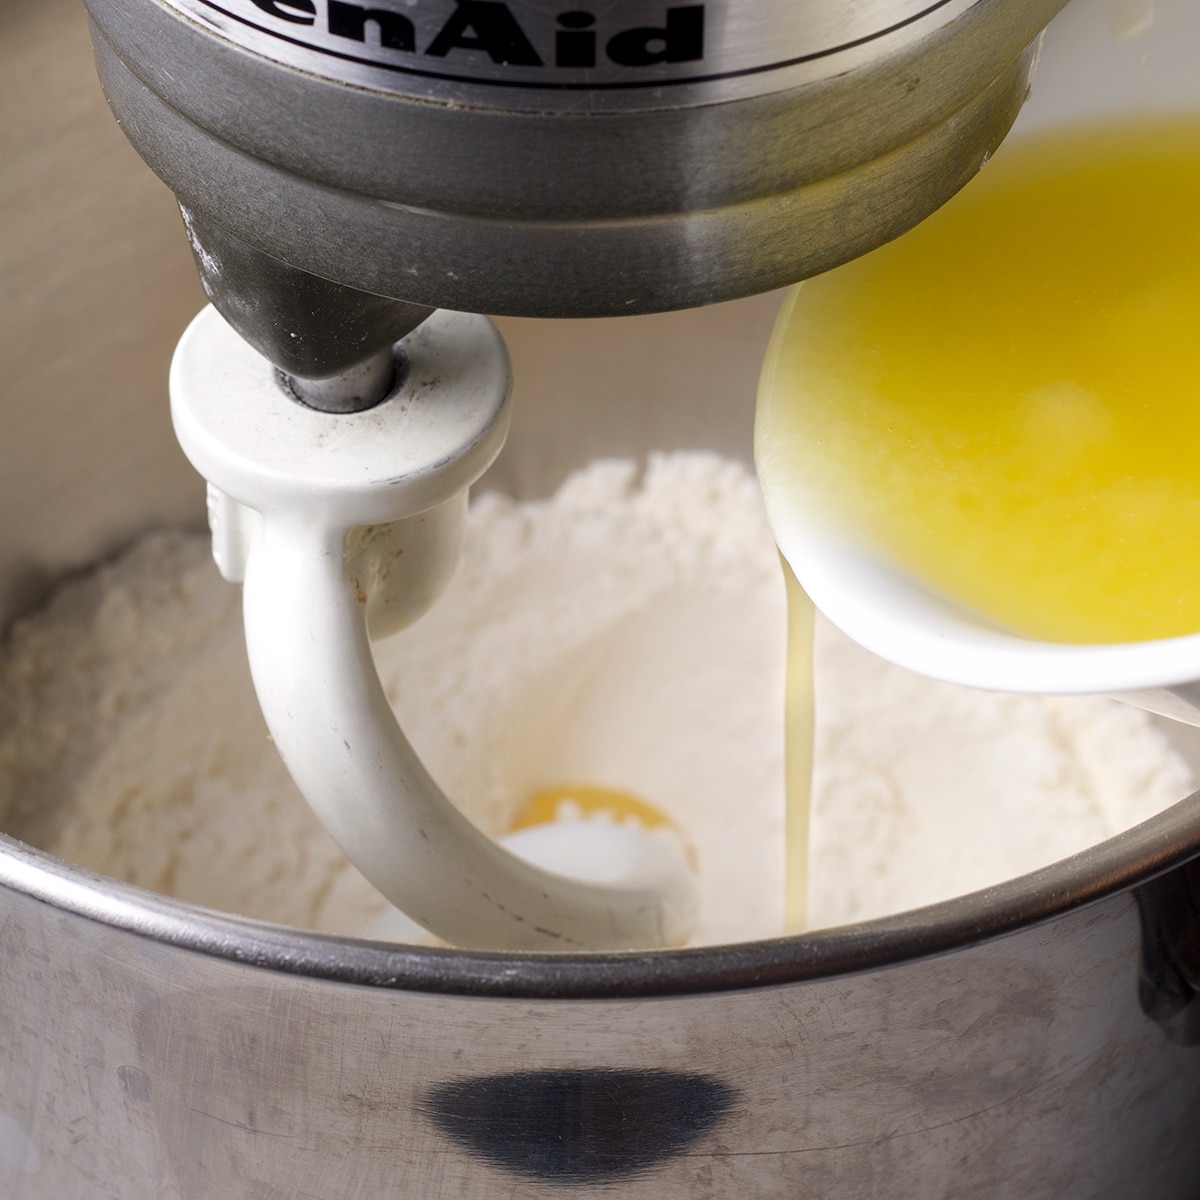 Homemade Flour Tortillas Made with Butter